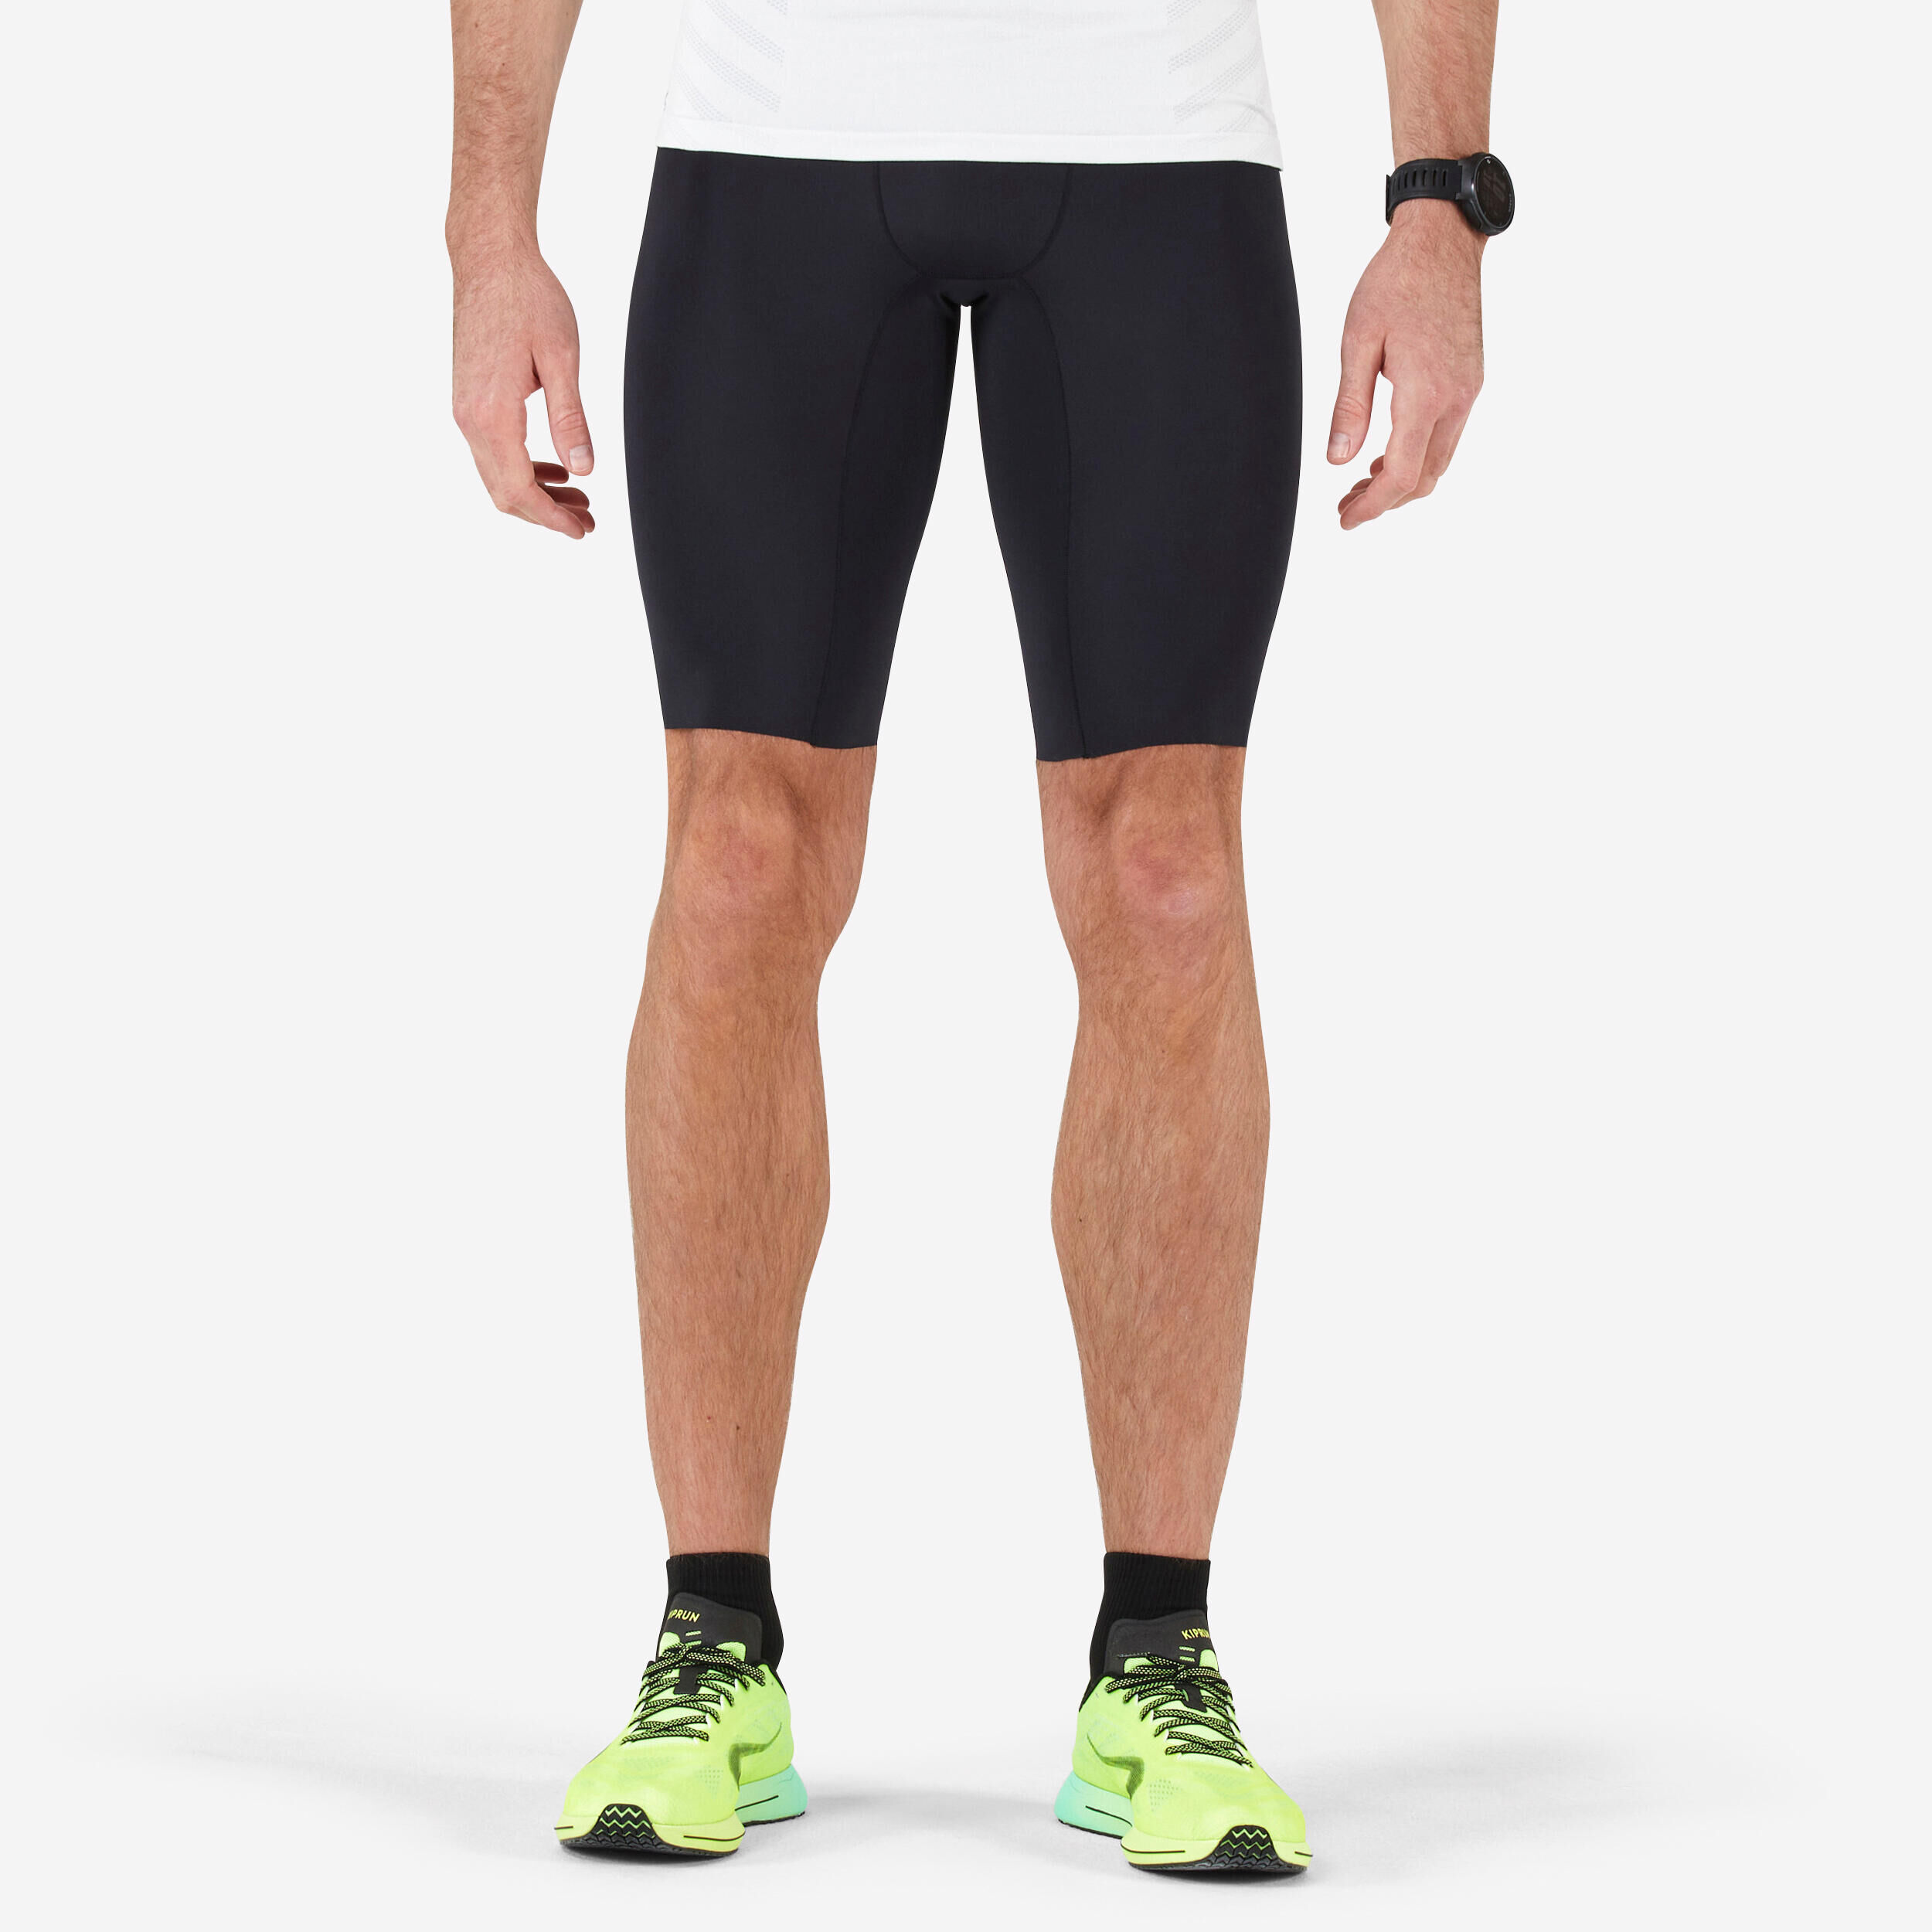 KIPRUN Men's Running Tight Shorts - black